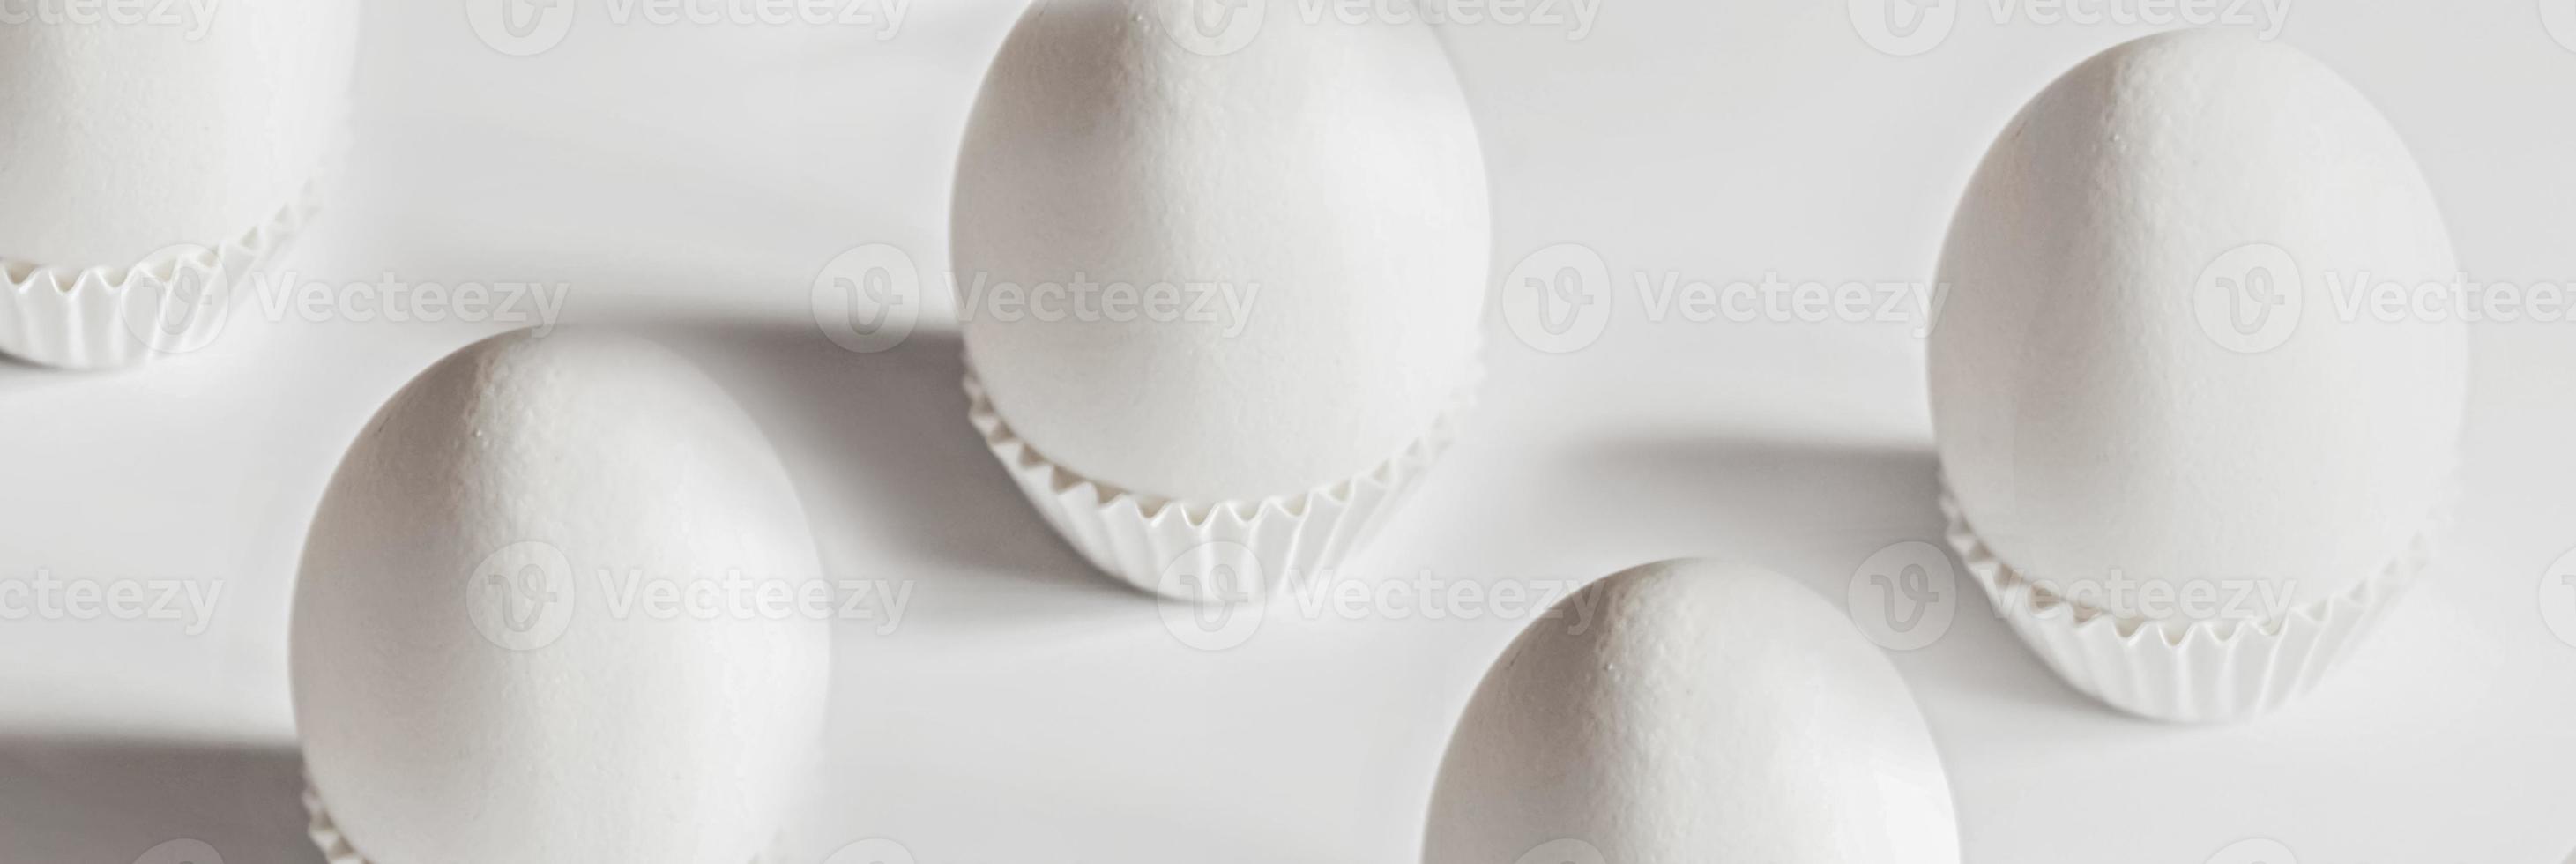 witte eieren op een witte geïsoleerde achtergrond met schaduwen foto